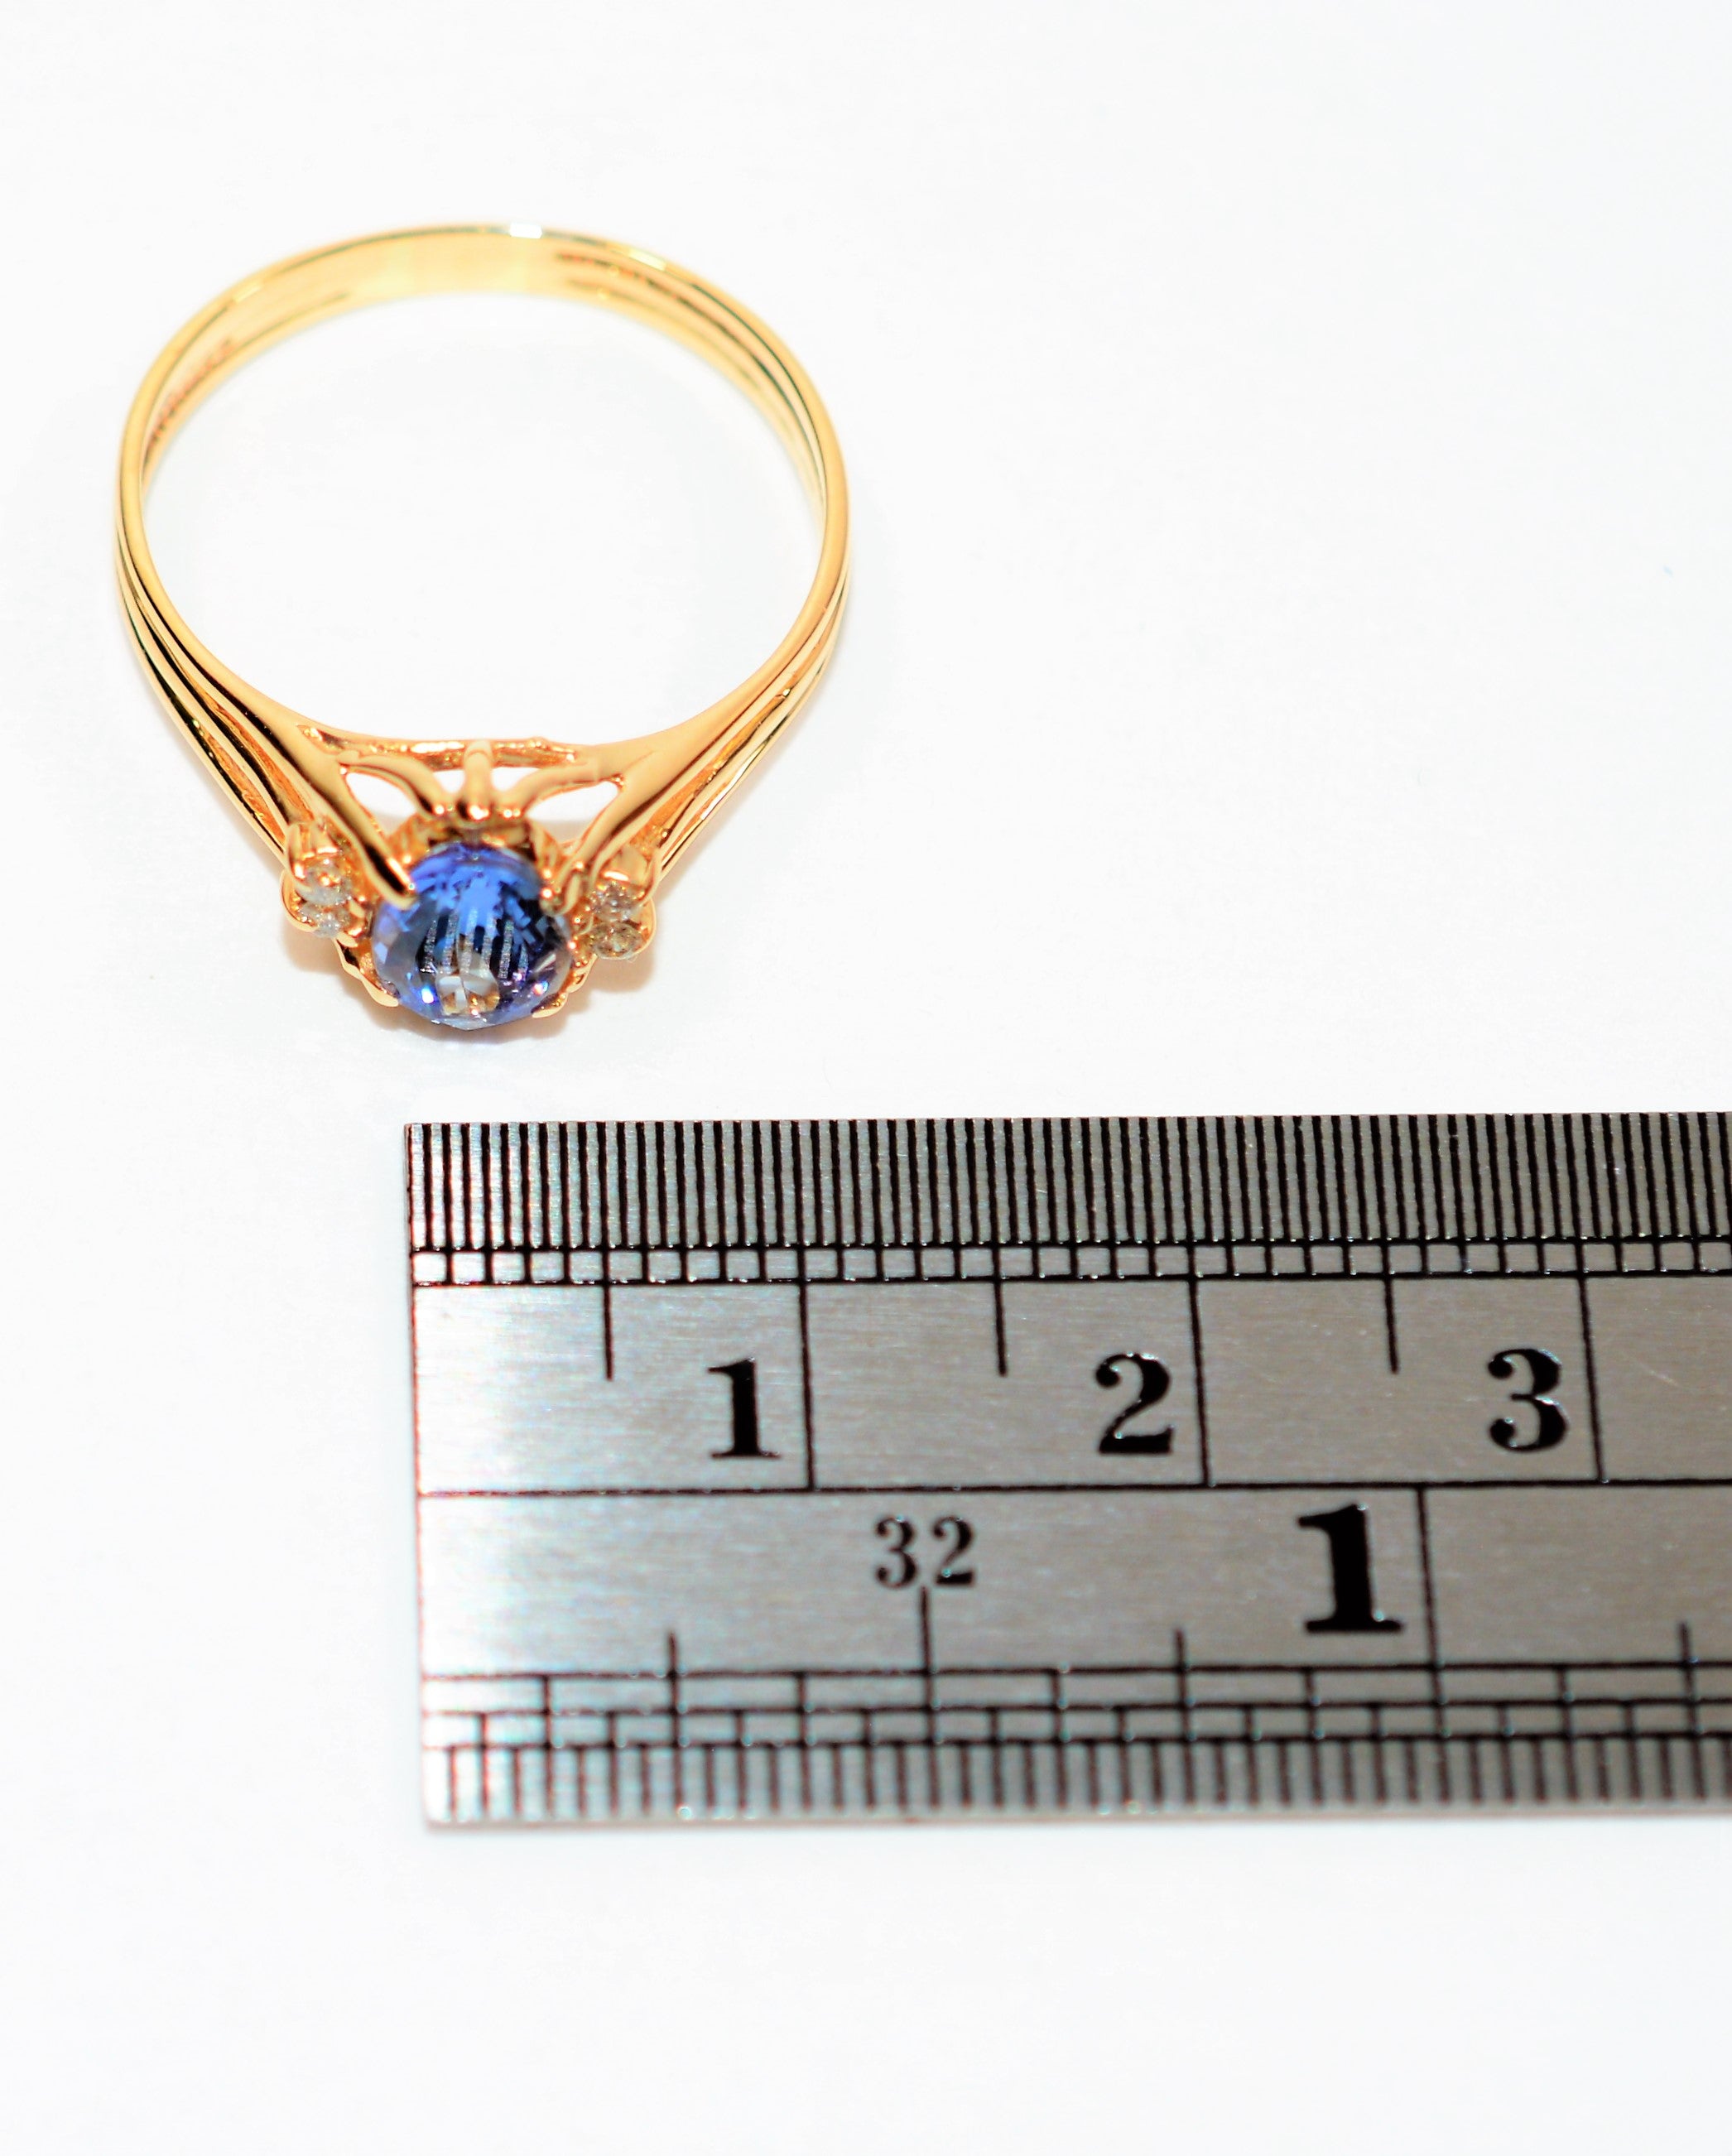 Natural Tanzanite & Diamond Ring 14K Solid Gold .84tcw Gemstone Ring Statement Ring Ladies Ring Women's Ring December Birthstone Ring Estate